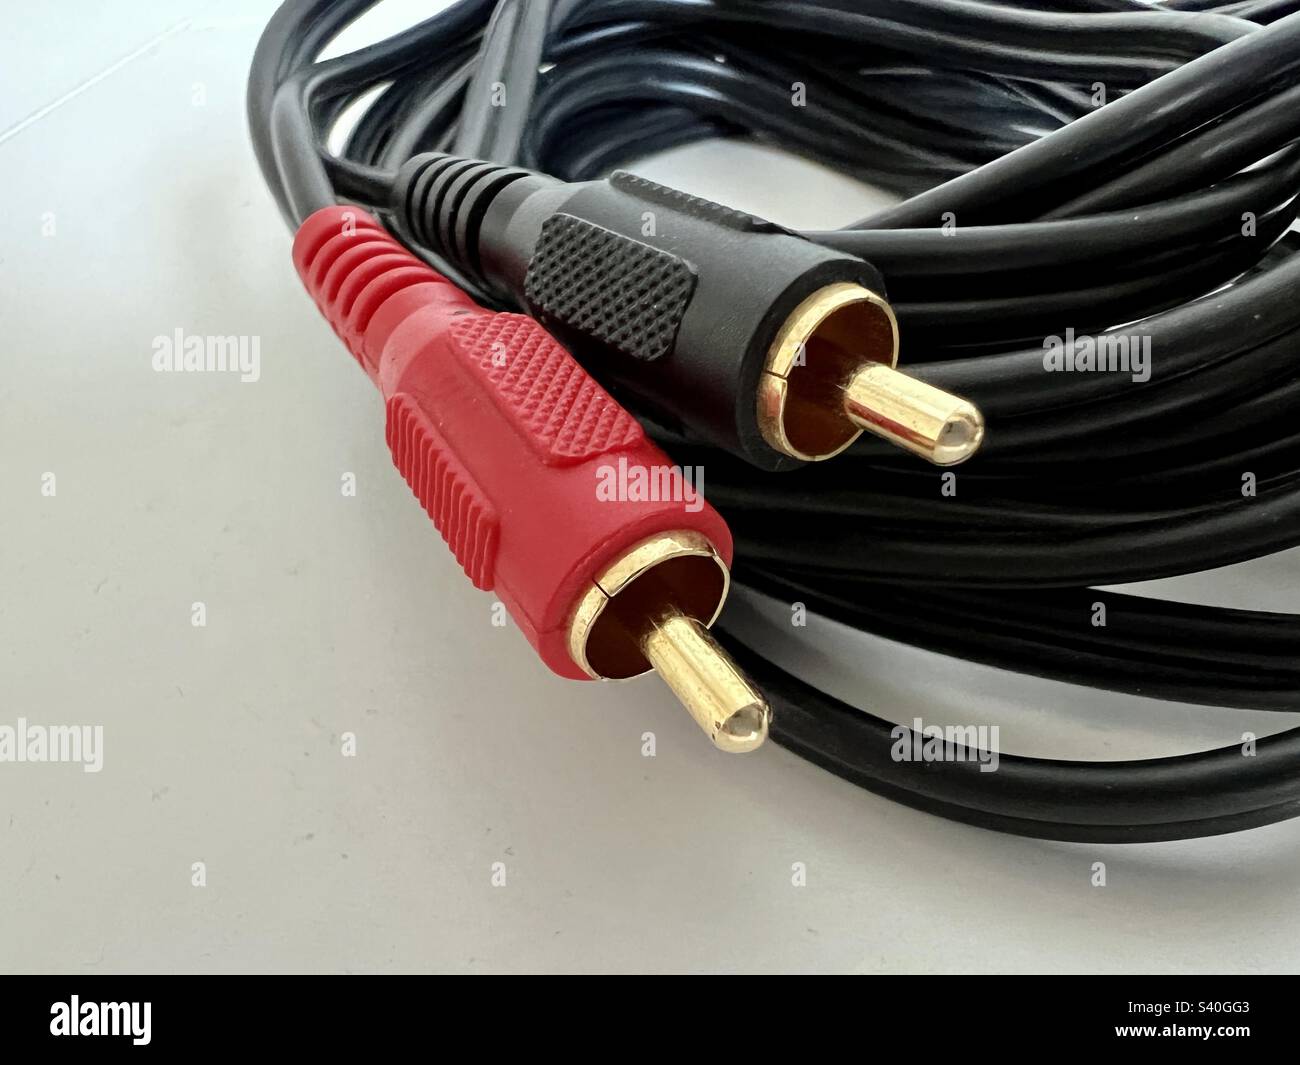 Macro View connecteurs phono plaqués or avec couvercles en plastique rouge et noir, à l'extrémité du câble audio noir, reposant sur une surface blanche et lisse Banque D'Images